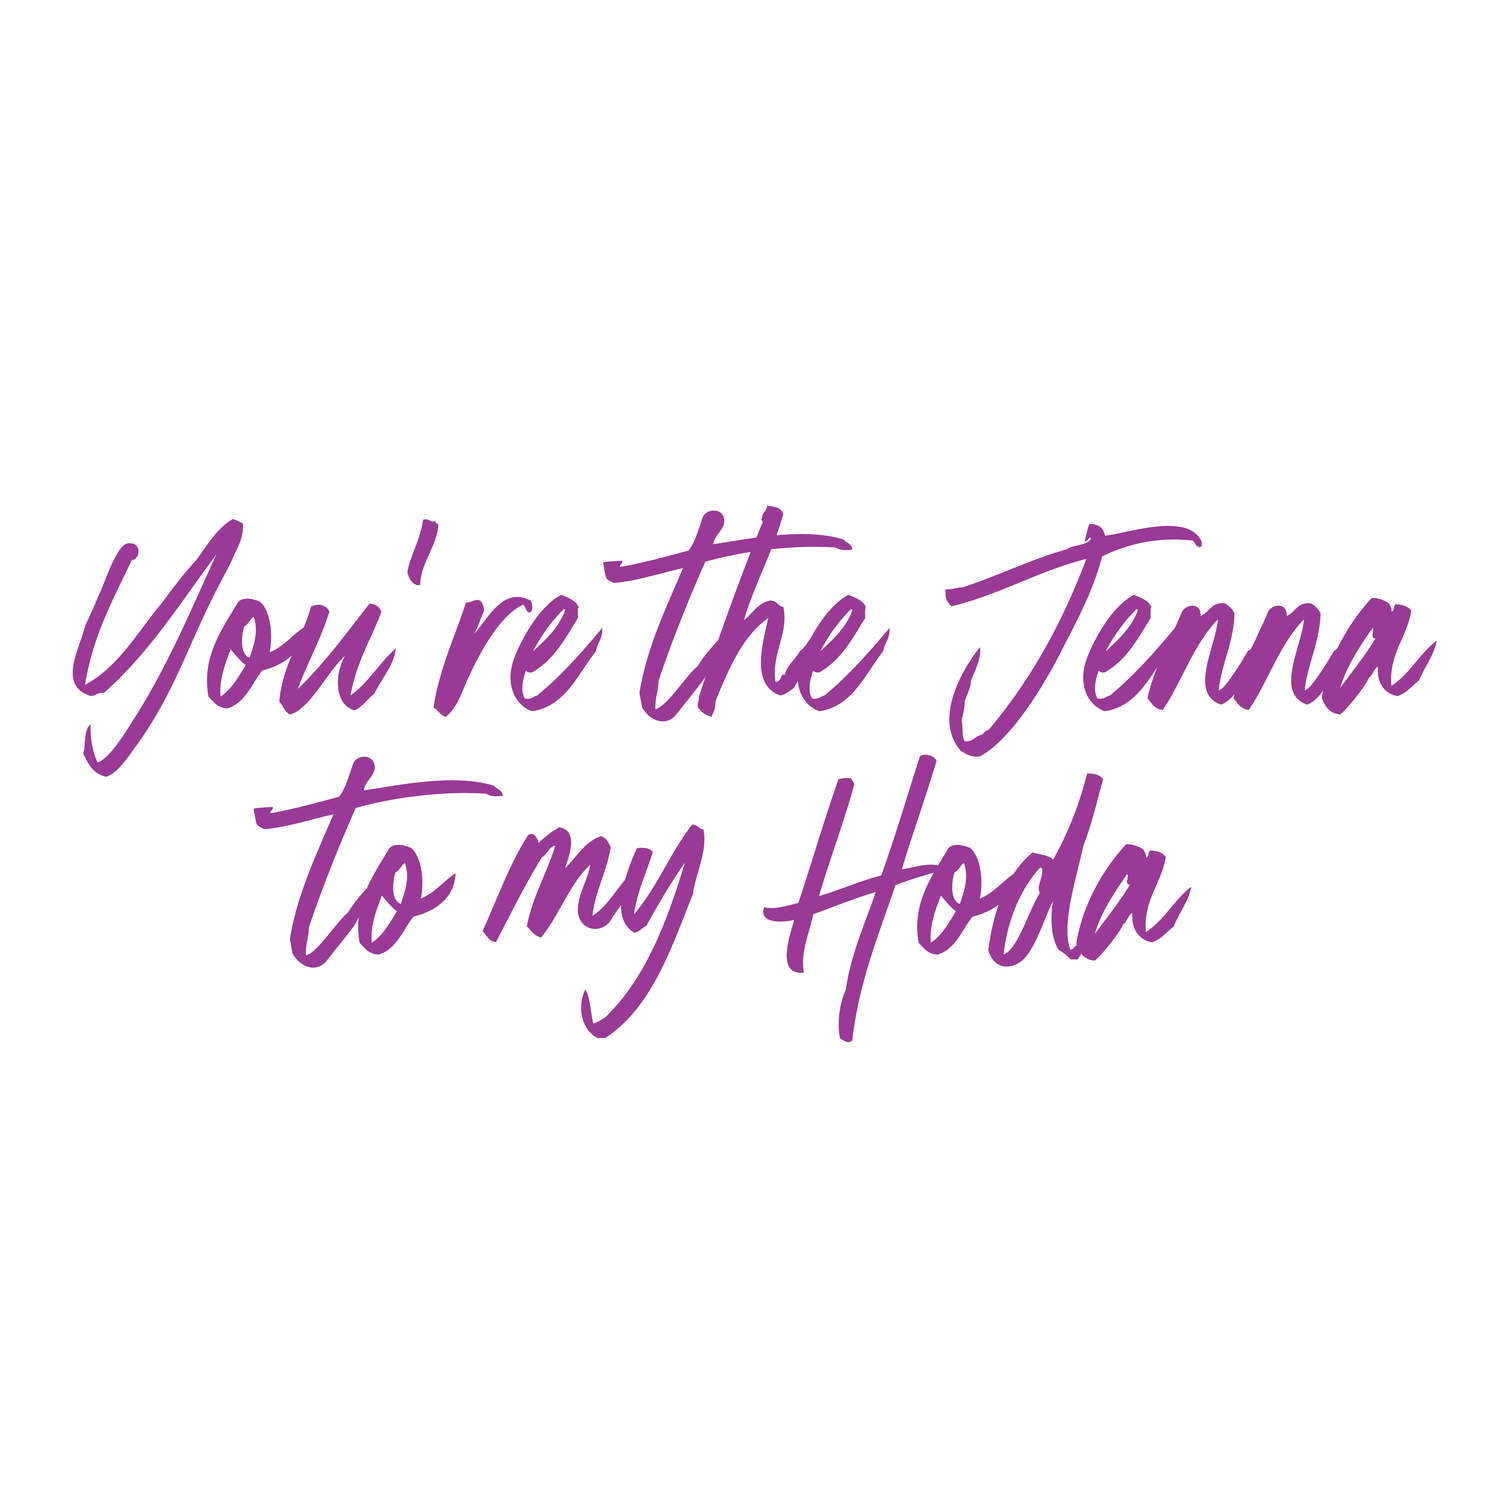 TODAY Show With Hoda & Jenna You Are The Jenna To My Hoda White Mug